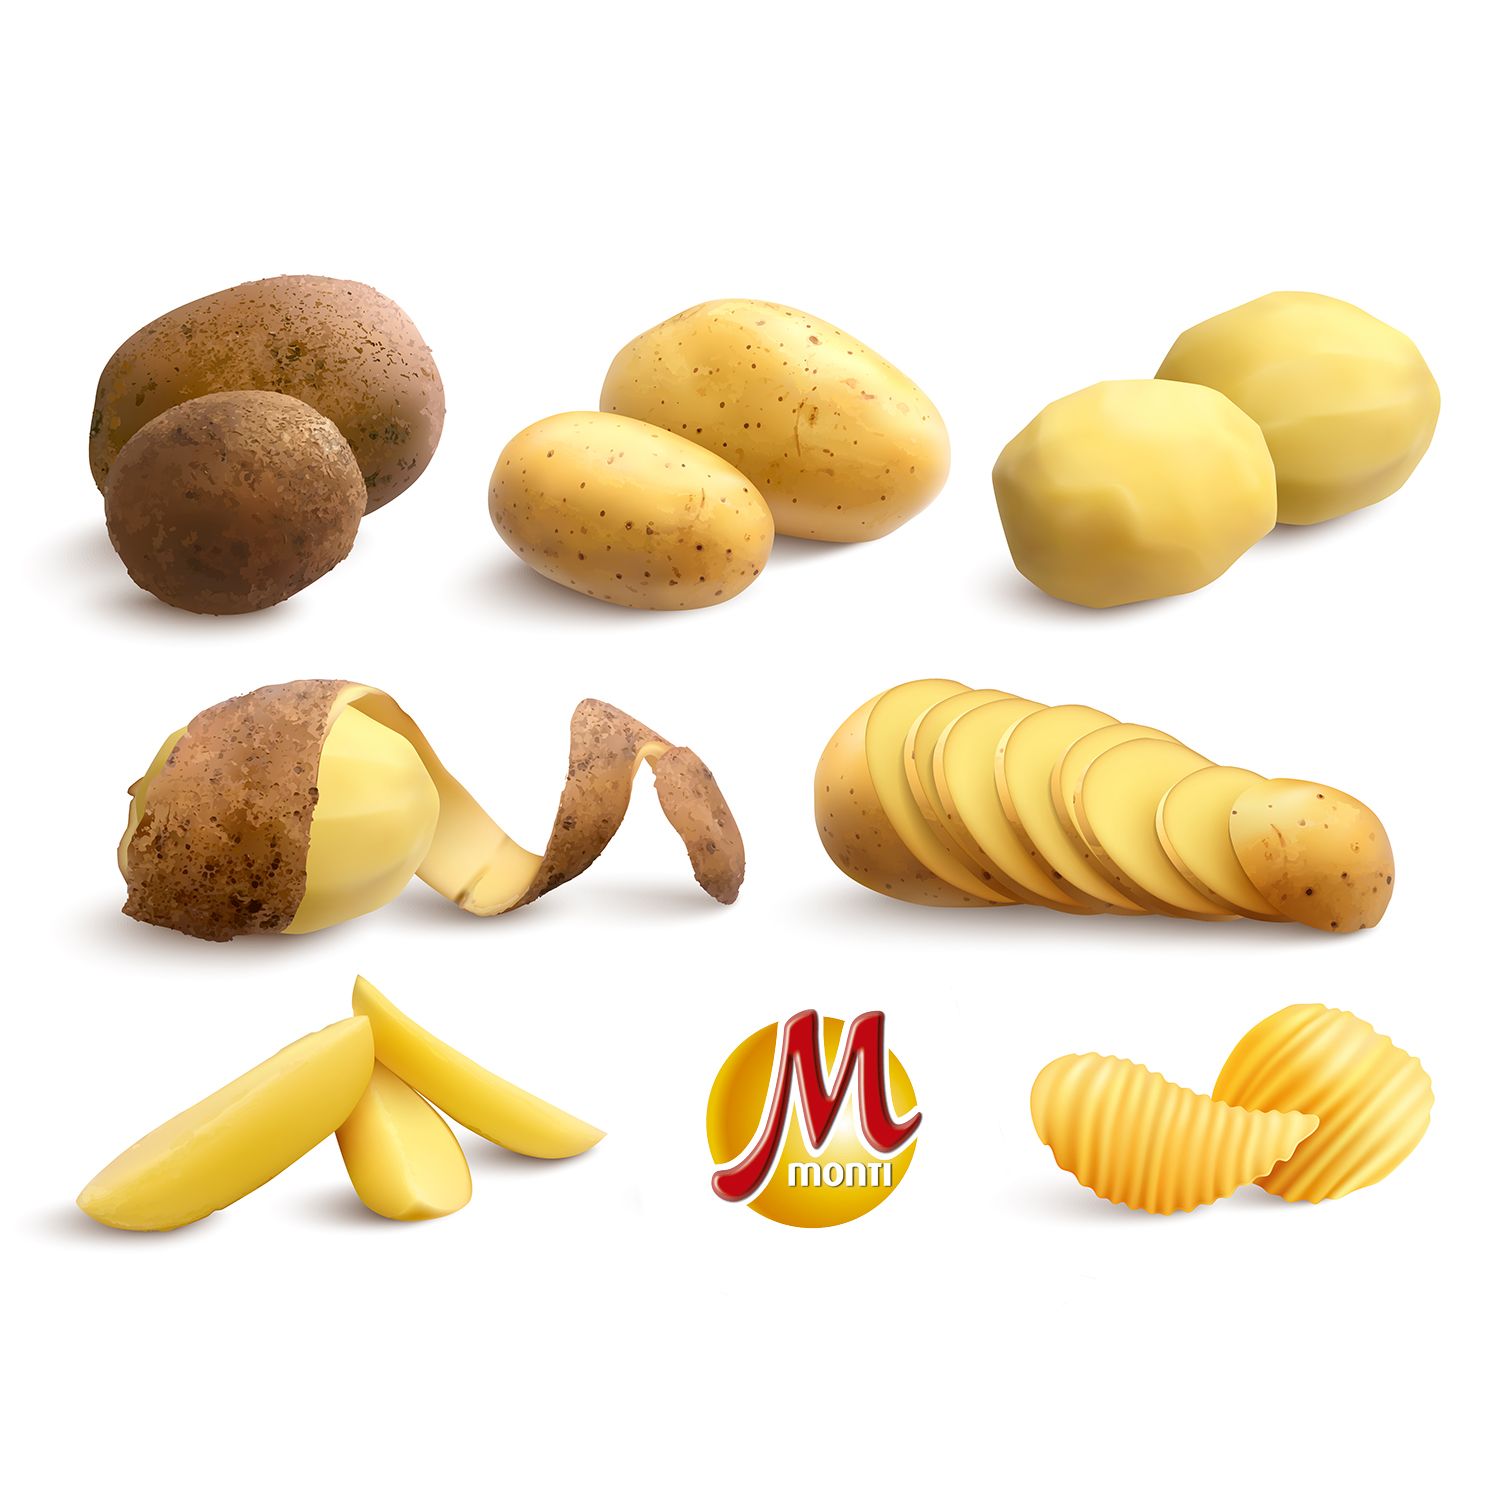 15 tipos de corte de patata que necesitas conocer - Patatas Monti